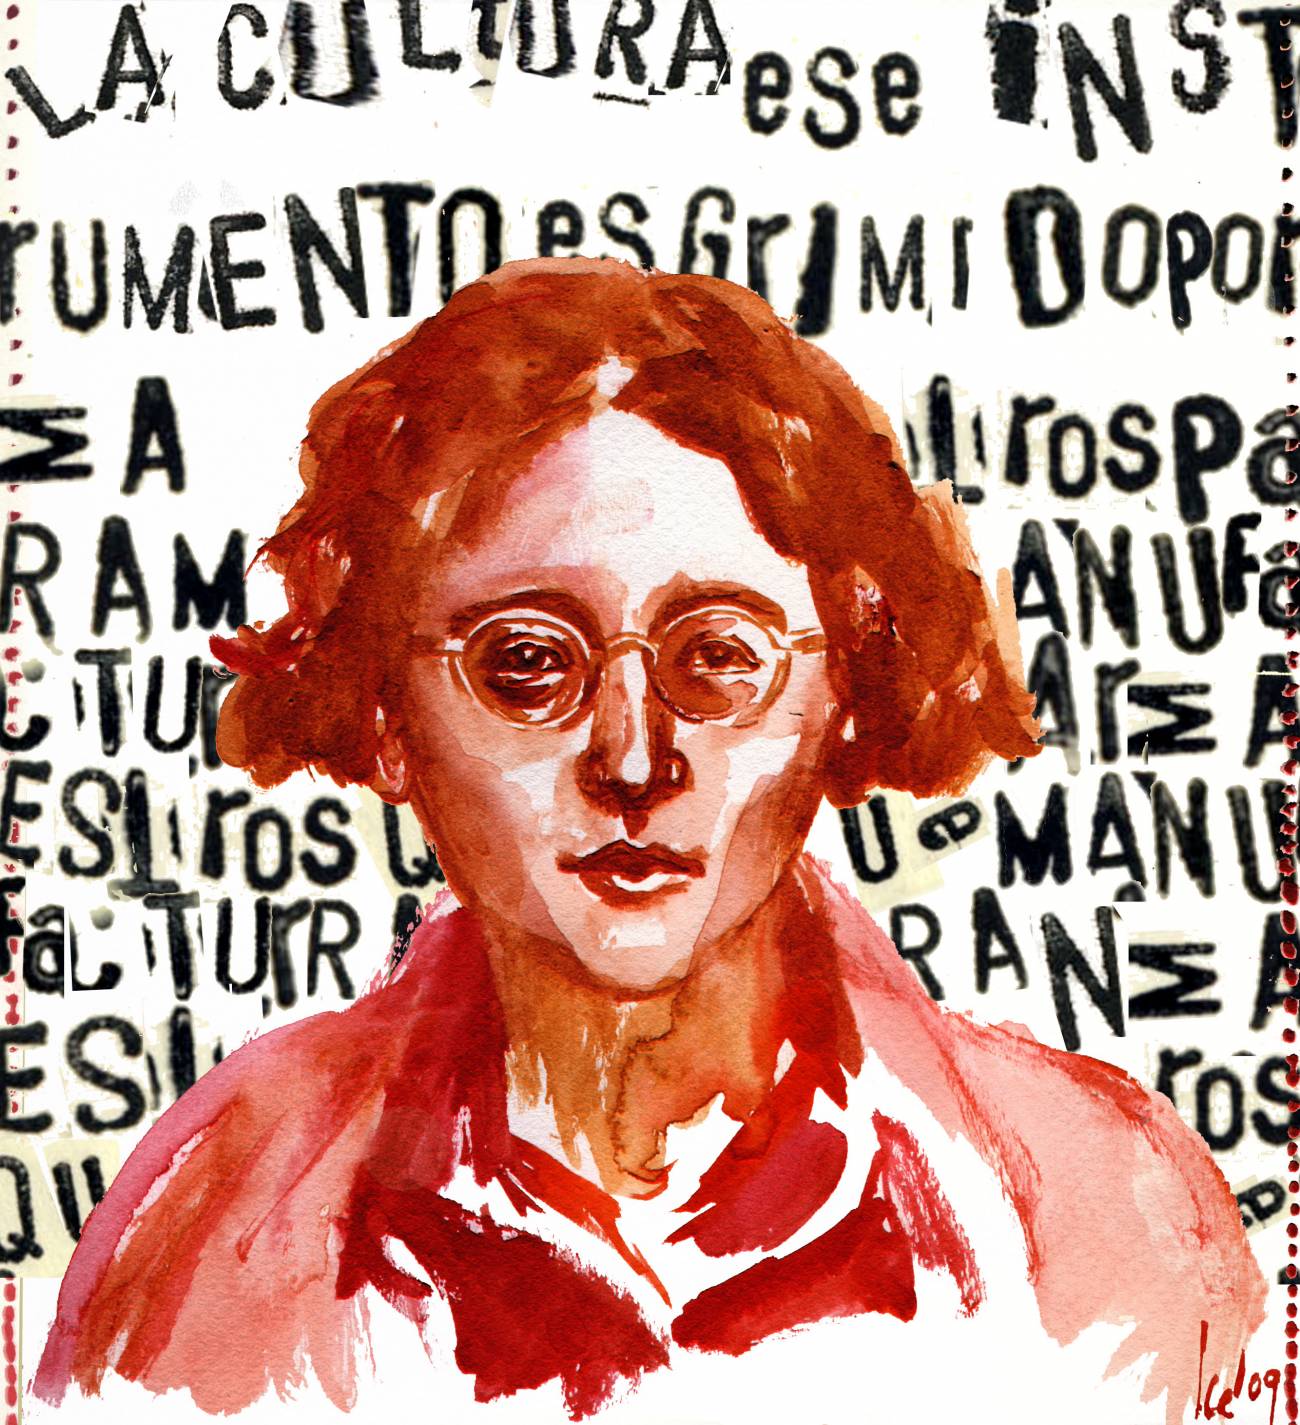 Se cumplen 100 años del nacimiento de Simone Weil, pensadora francesa revolucionaria 